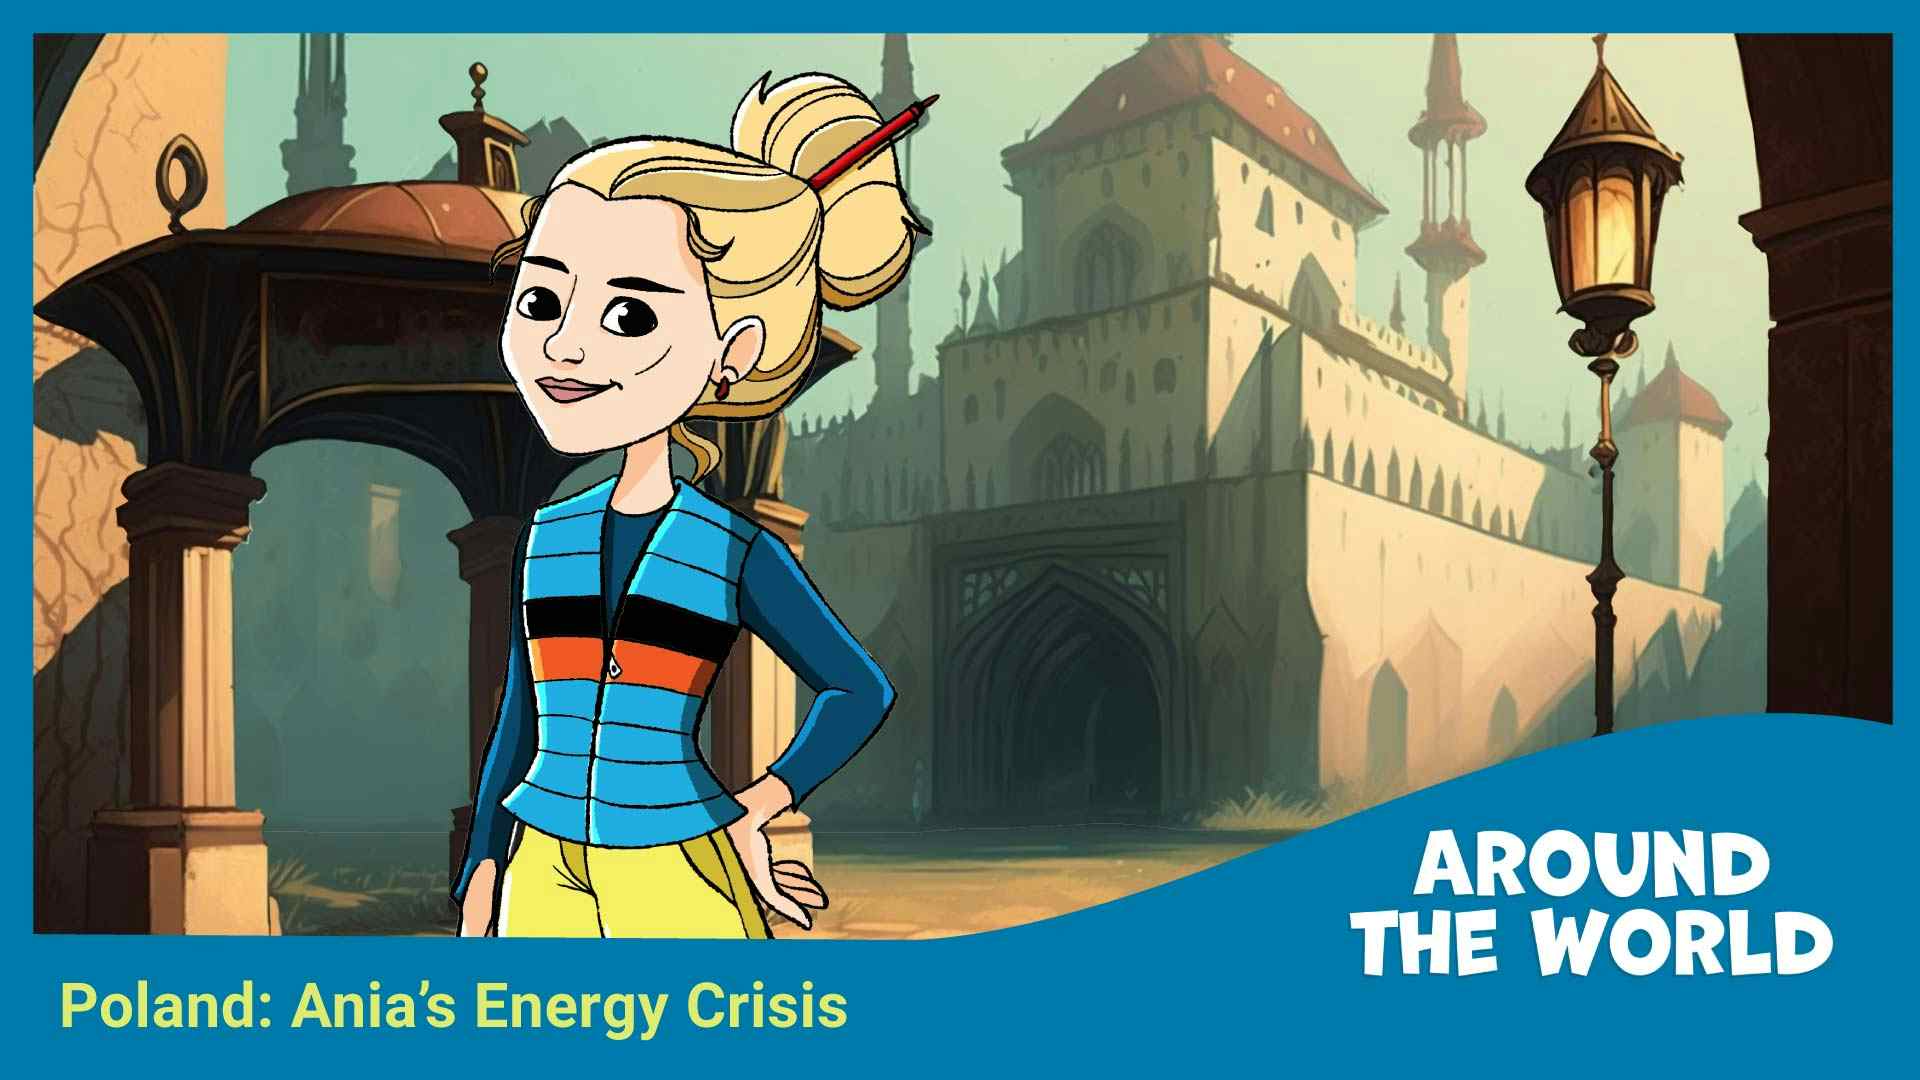 Poland: Ania's Energy Crisis